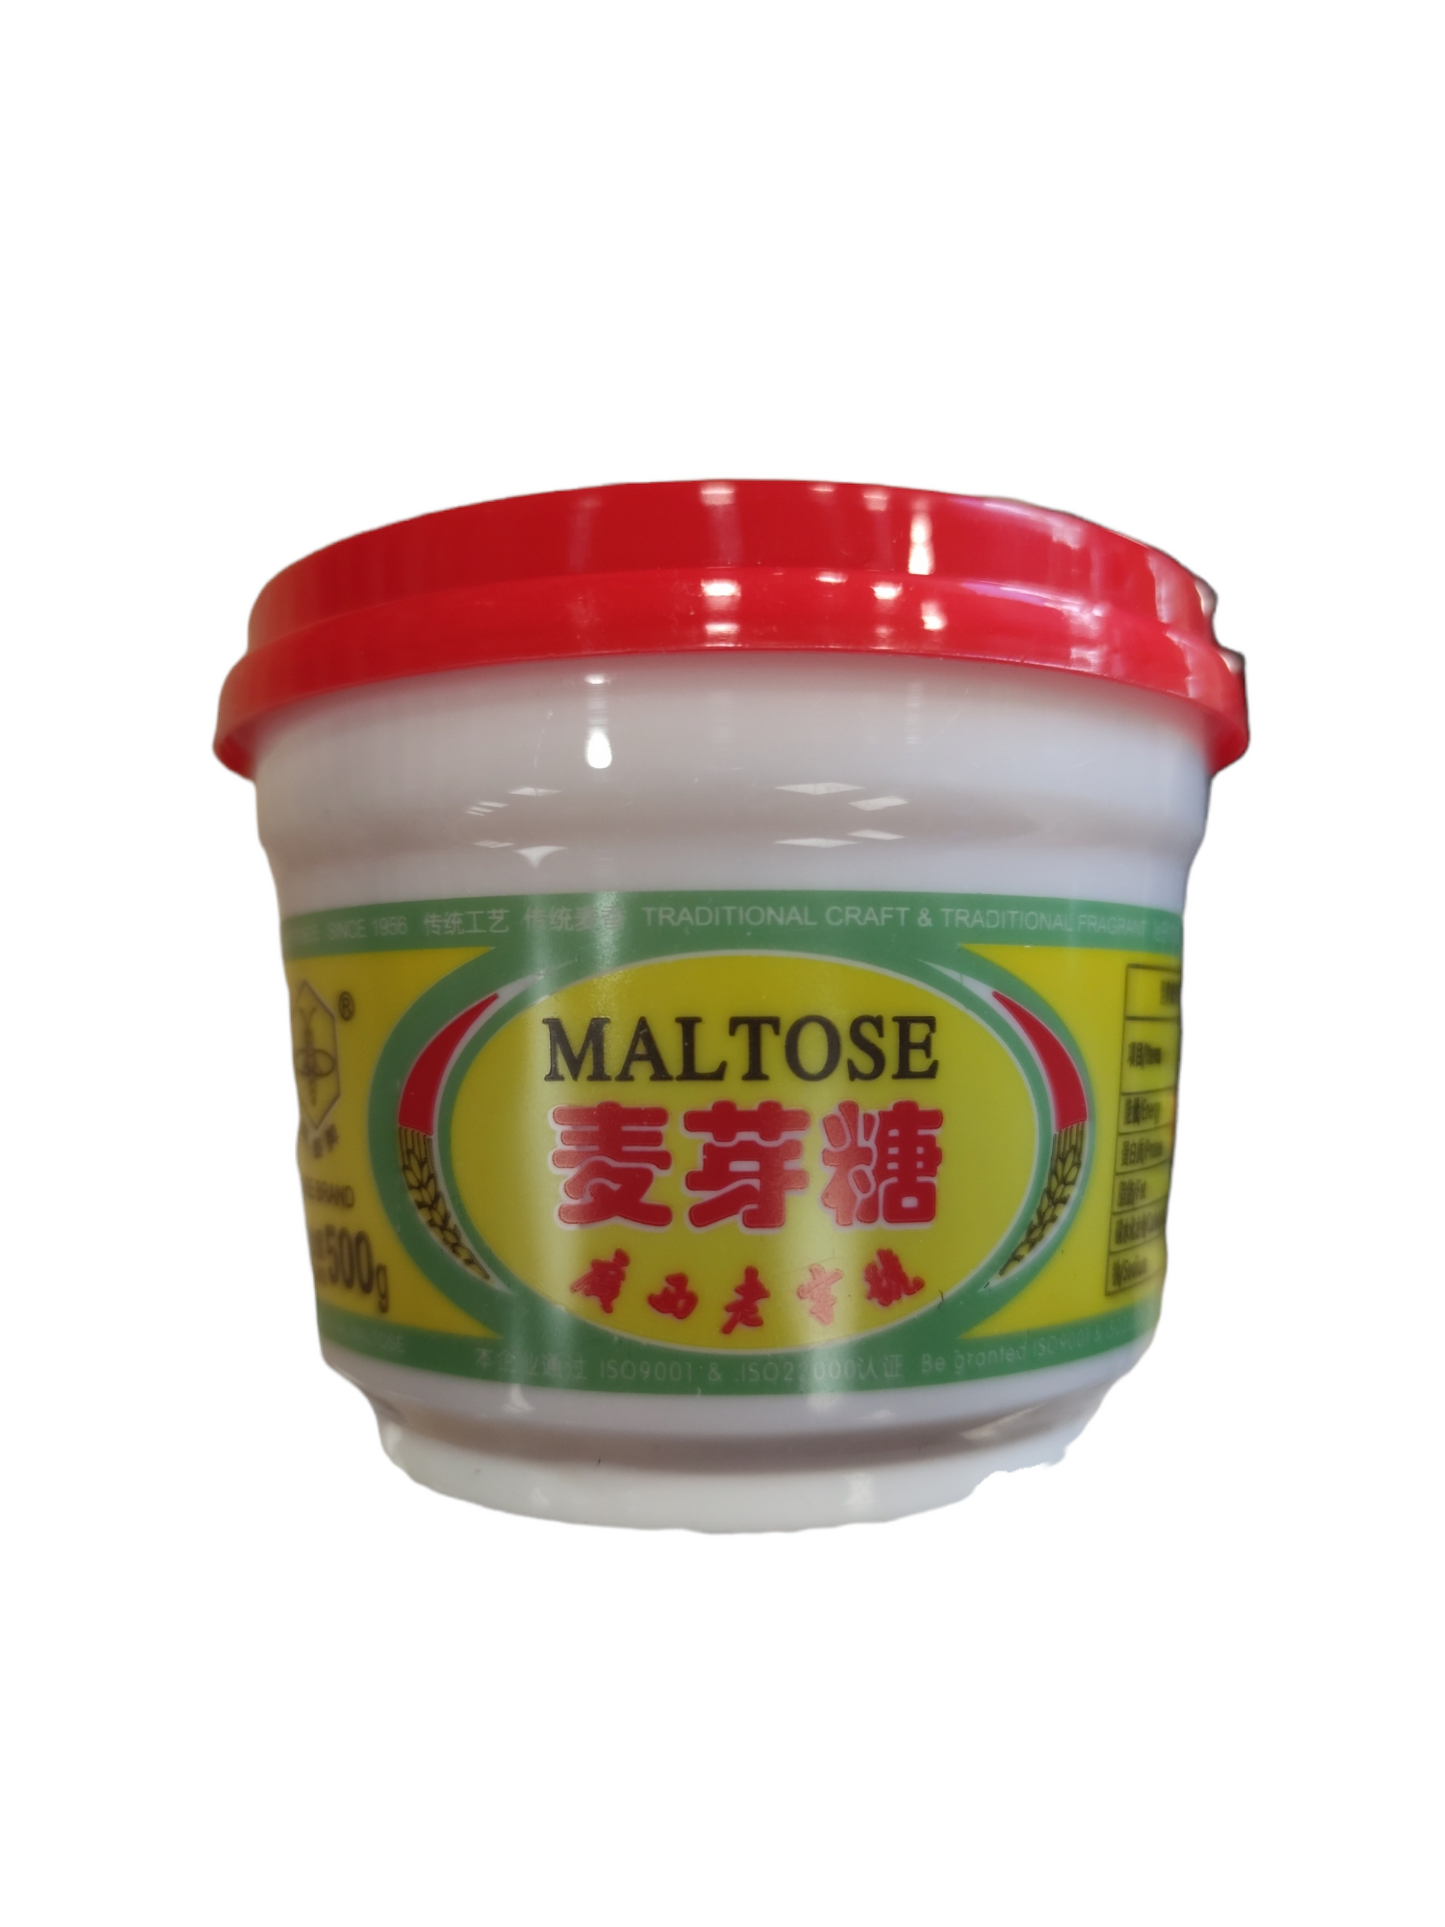 Bee’s Maltose 500g cup 蜜蜂牌杯裝麥芽糖